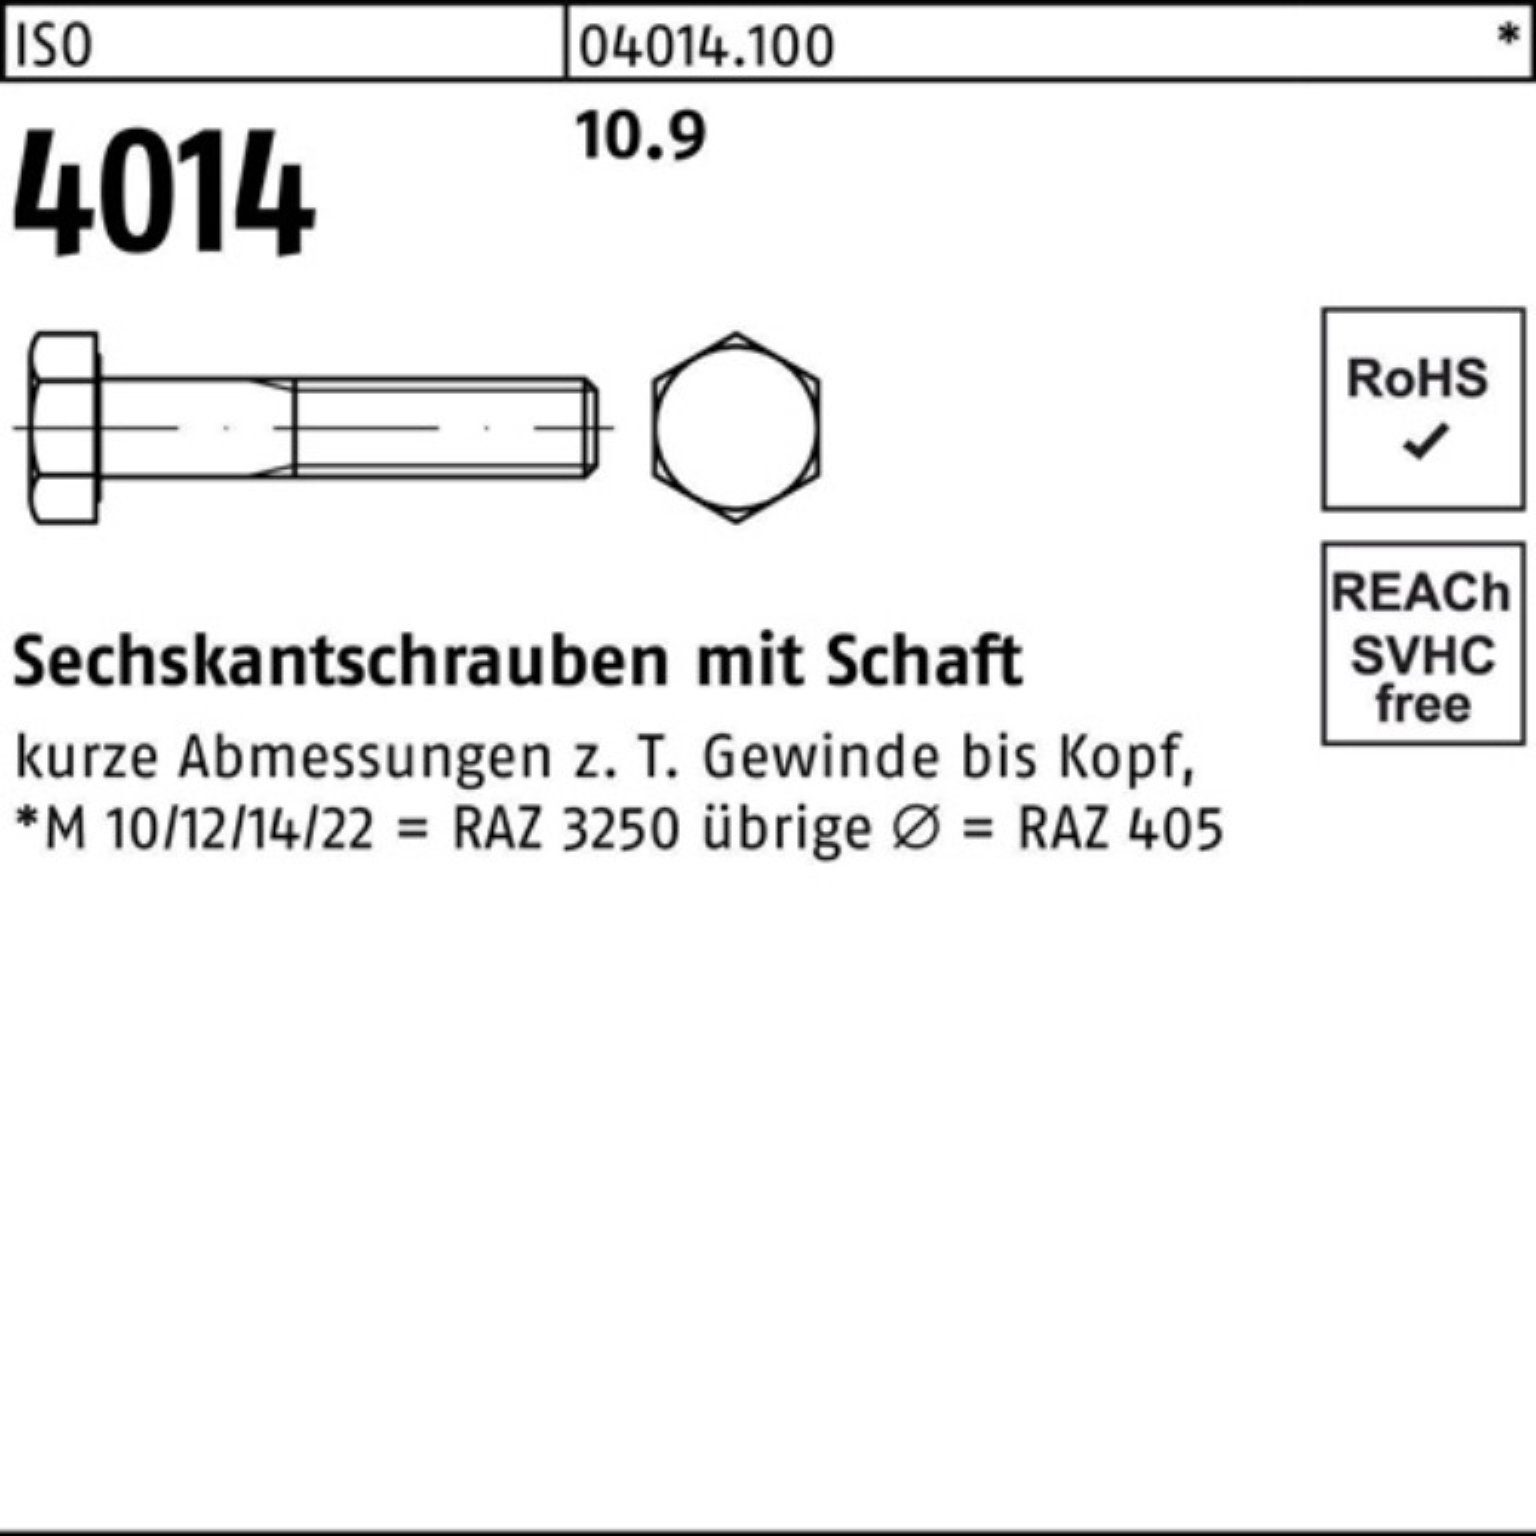 Schaft 150 Sechskantschraube Bufab 10.9 IS 4014 1 Pack ISO Stück M39x 100er Sechskantschraube